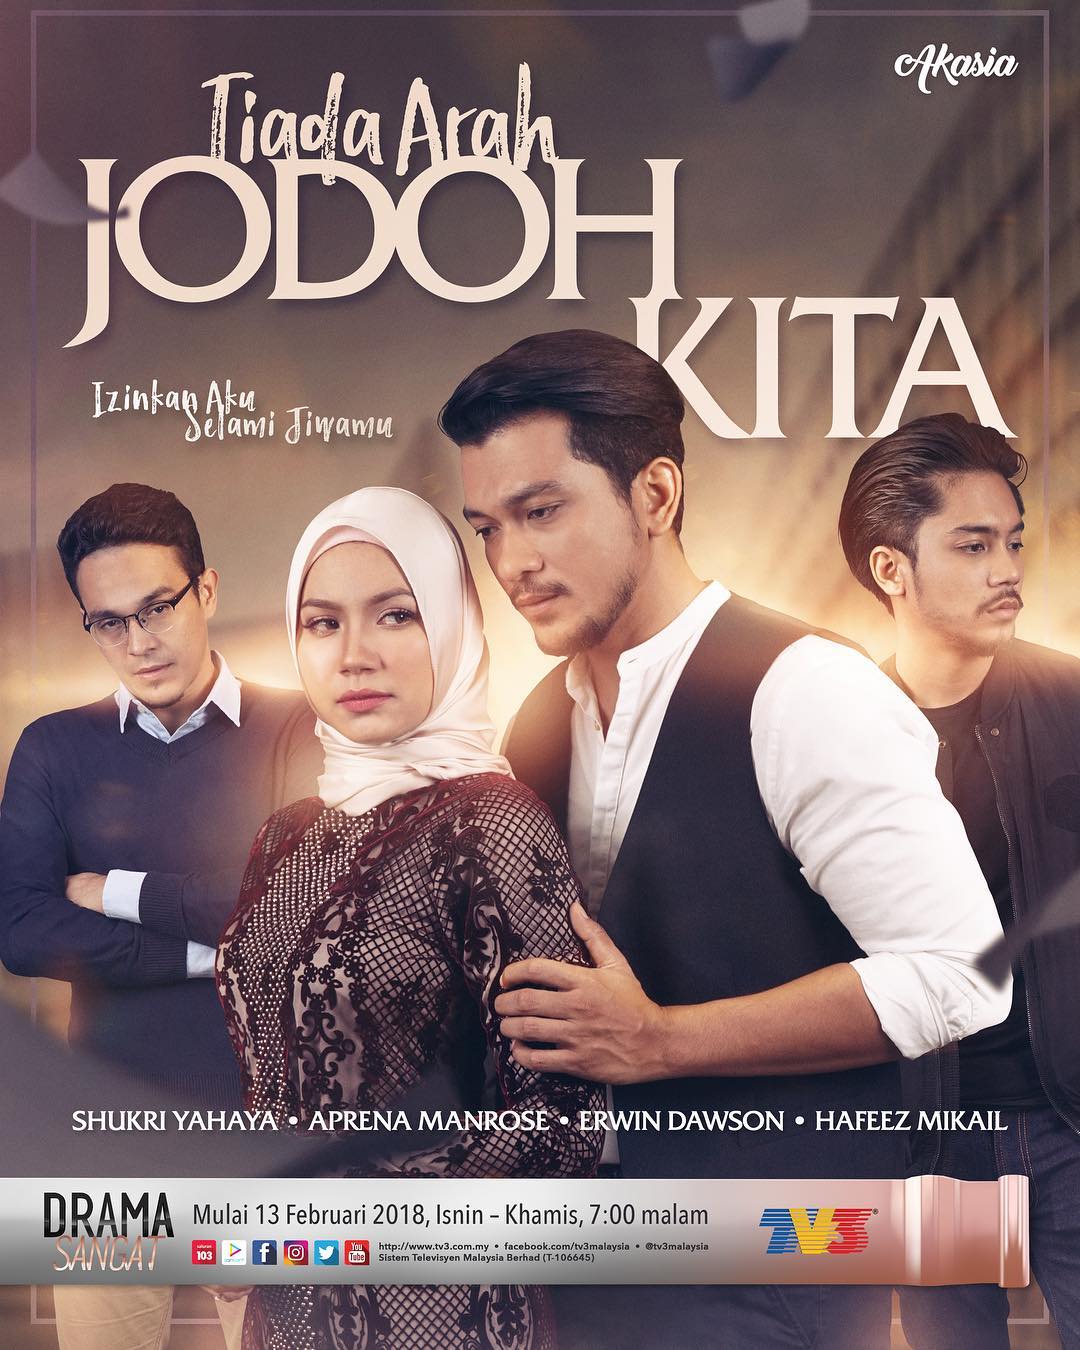 Drama Tiada Arah Jodoh Kita 2018 Tv3 Tonton Drama Filem Telemovie Cerekarama Melayu Online Best Malaysia Streaming Site